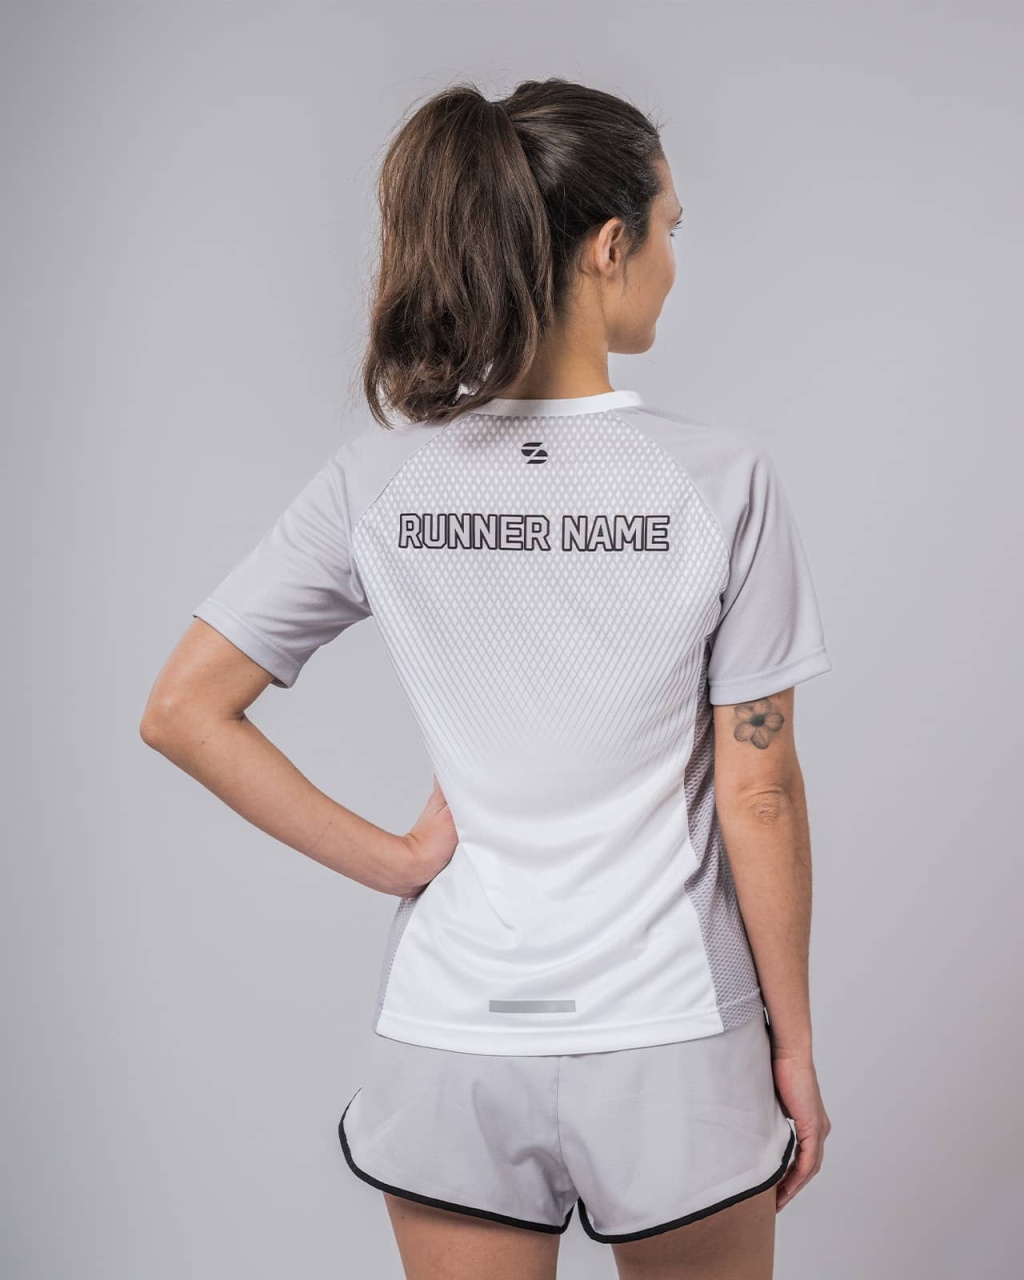 Pacer women’s running shirt